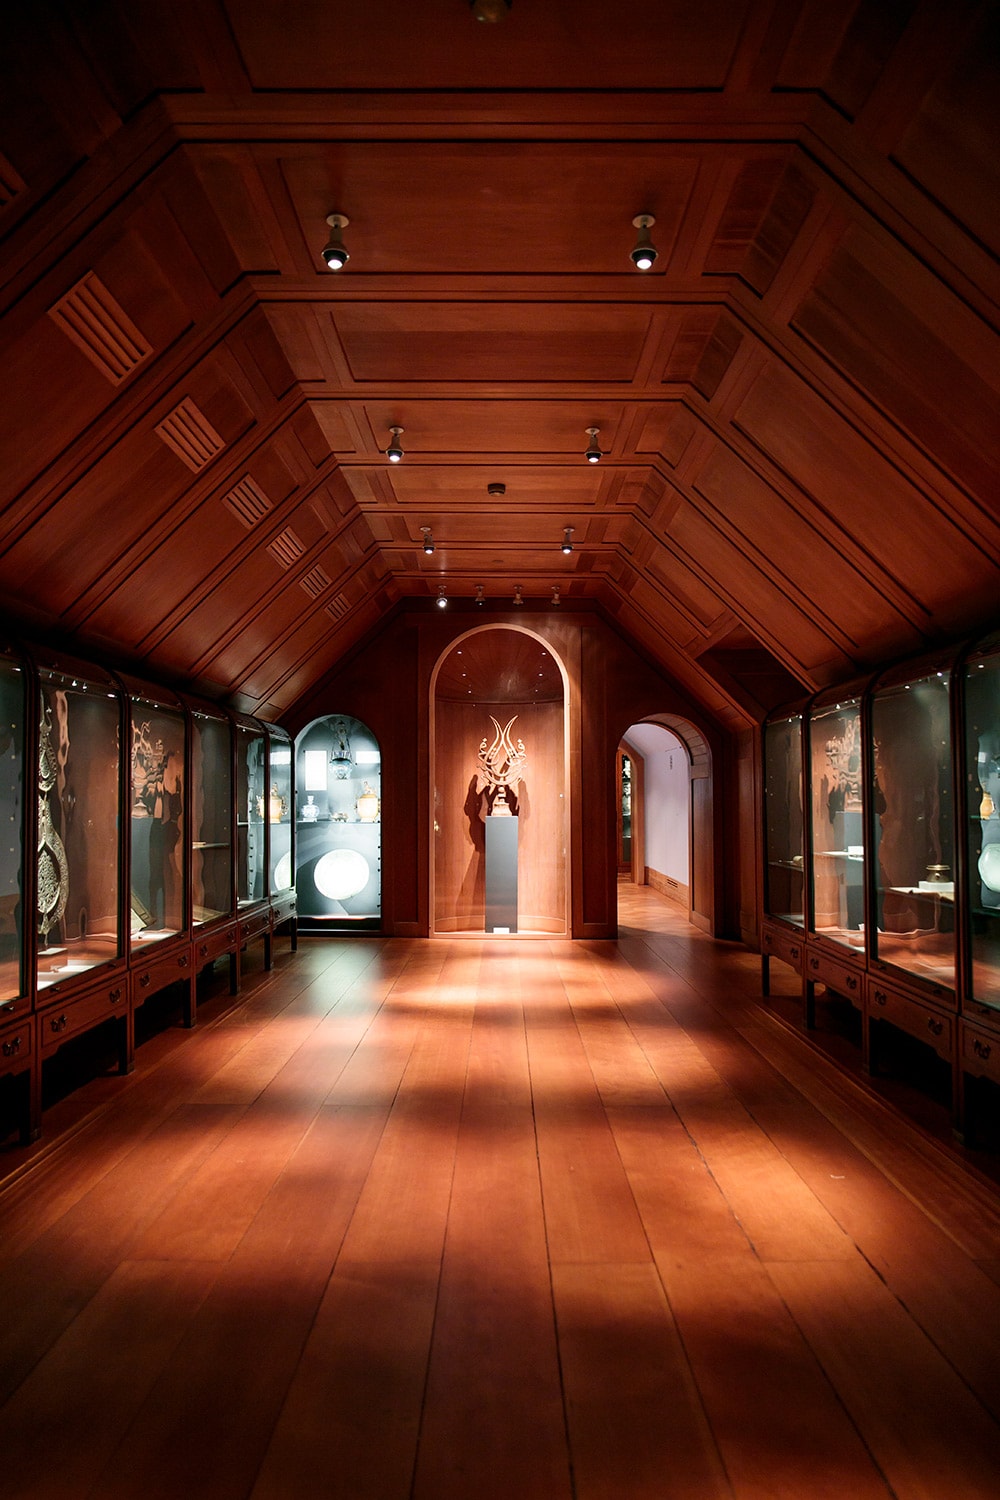 膨大なコレクションを誇る、イスラムアートの展示室は、「デンマーク近代家具の父」といわれる巨匠建築家、コーア・クリントの設計。